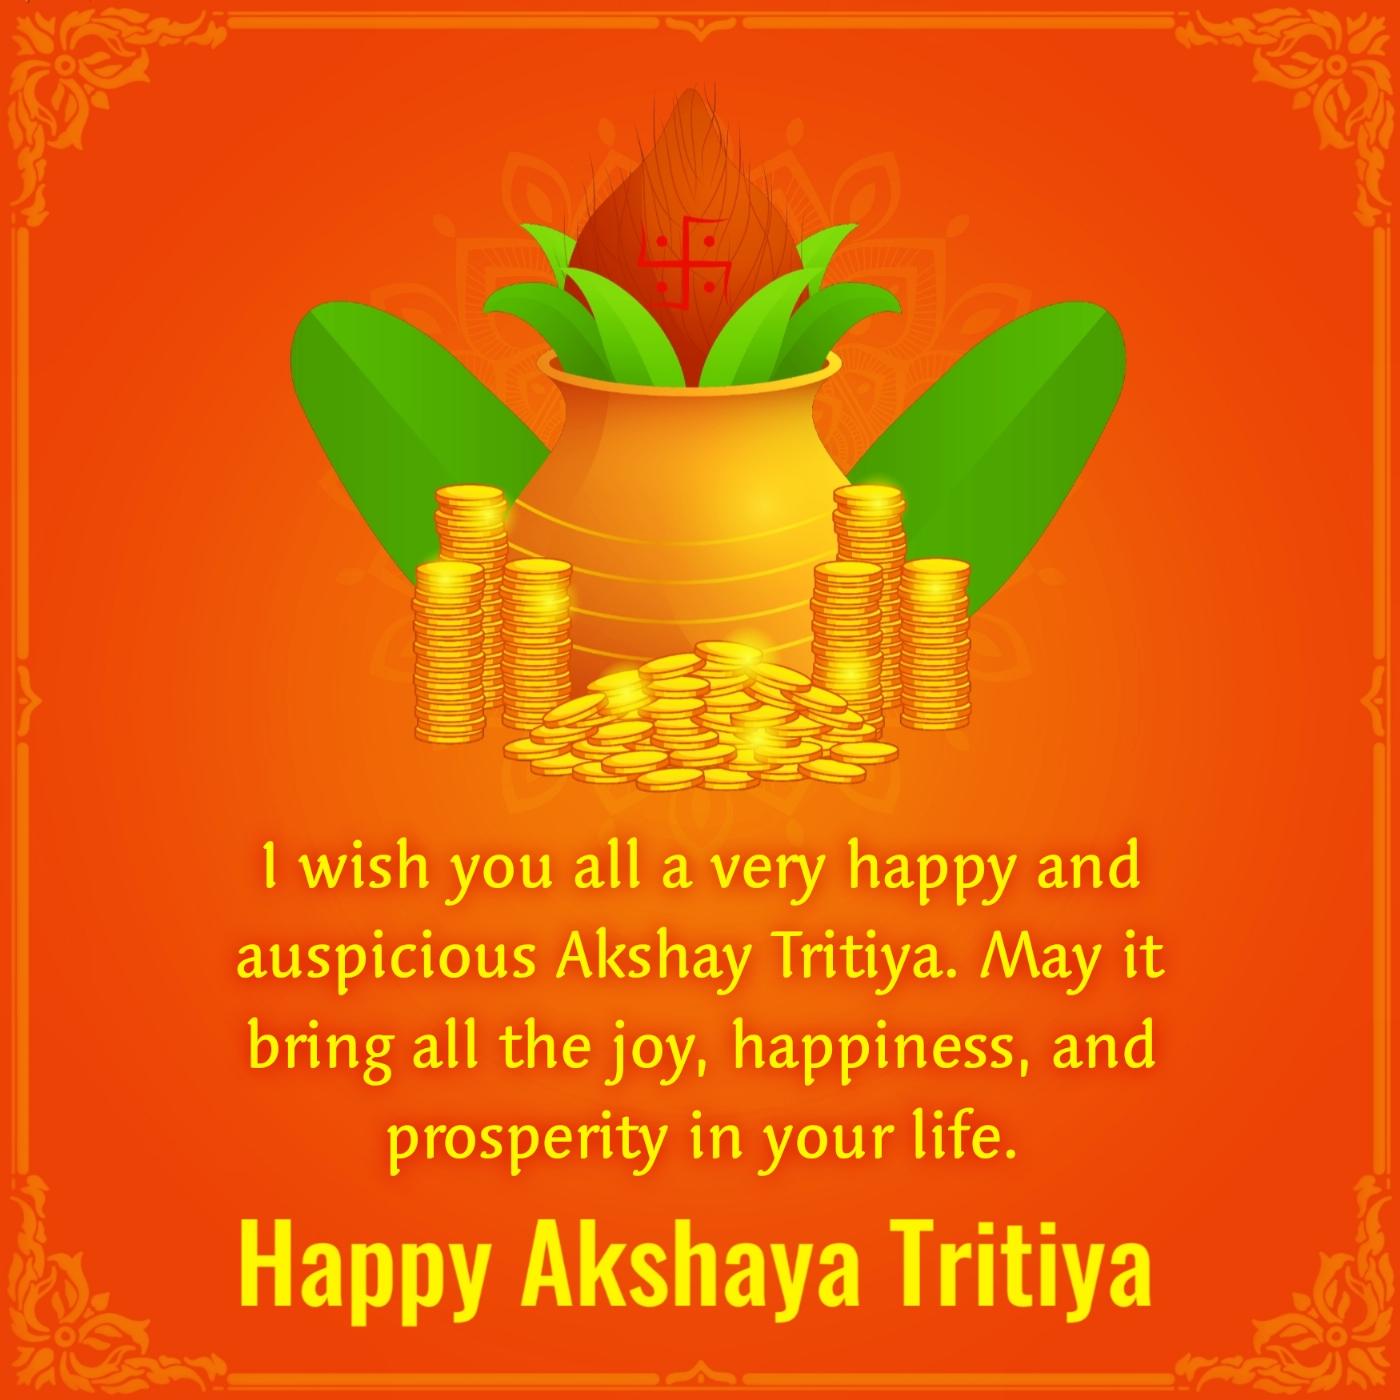 I wish you all a very happy and auspicious Akshay Tritiya